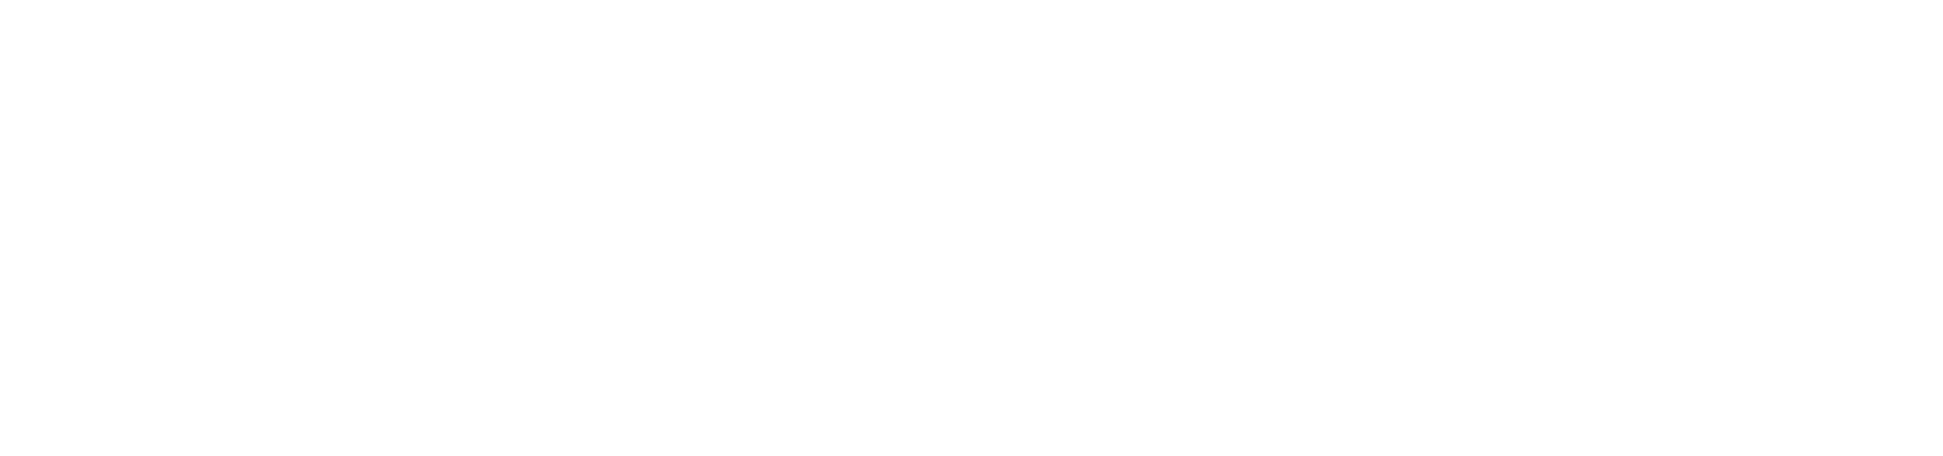 Devon Logo - Home - ODI Devon